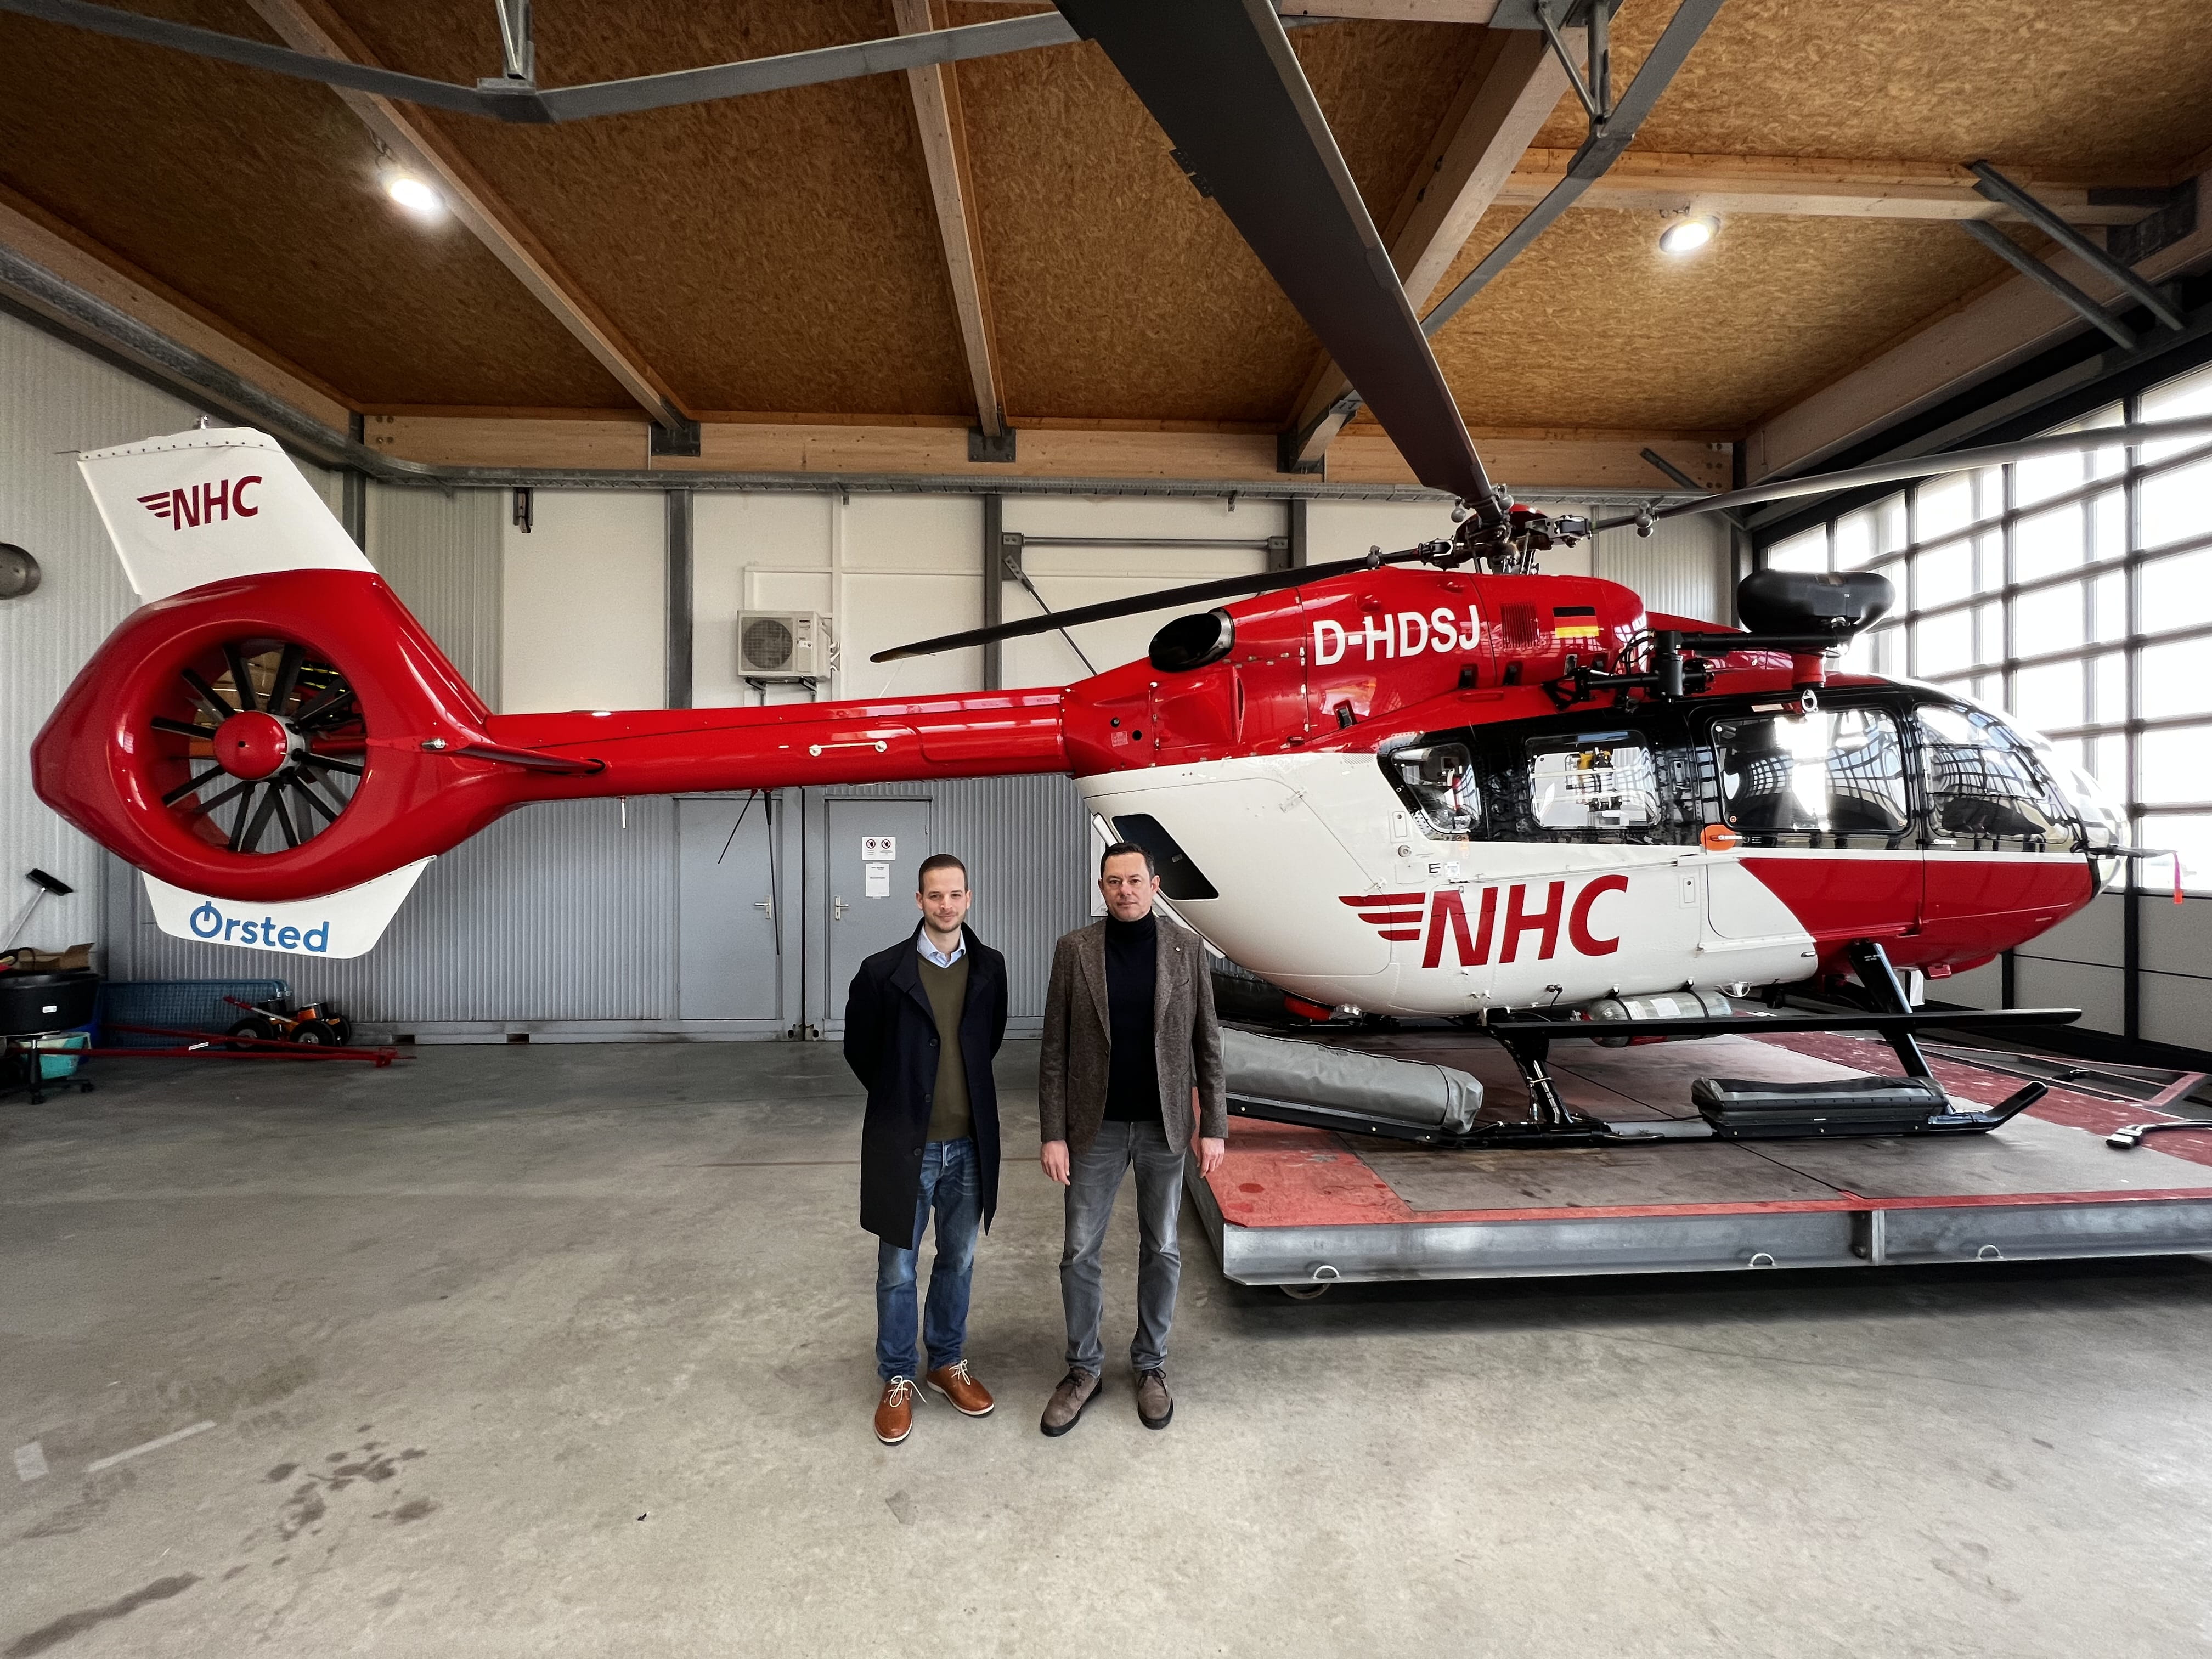 Thijs Schless, Leiter der Betriebsführung von Ørsted am Standort Norddeich, und Armin Ortmann, Geschäftsführer der Northern Helicopter GmbH, vor dem Helikopter 